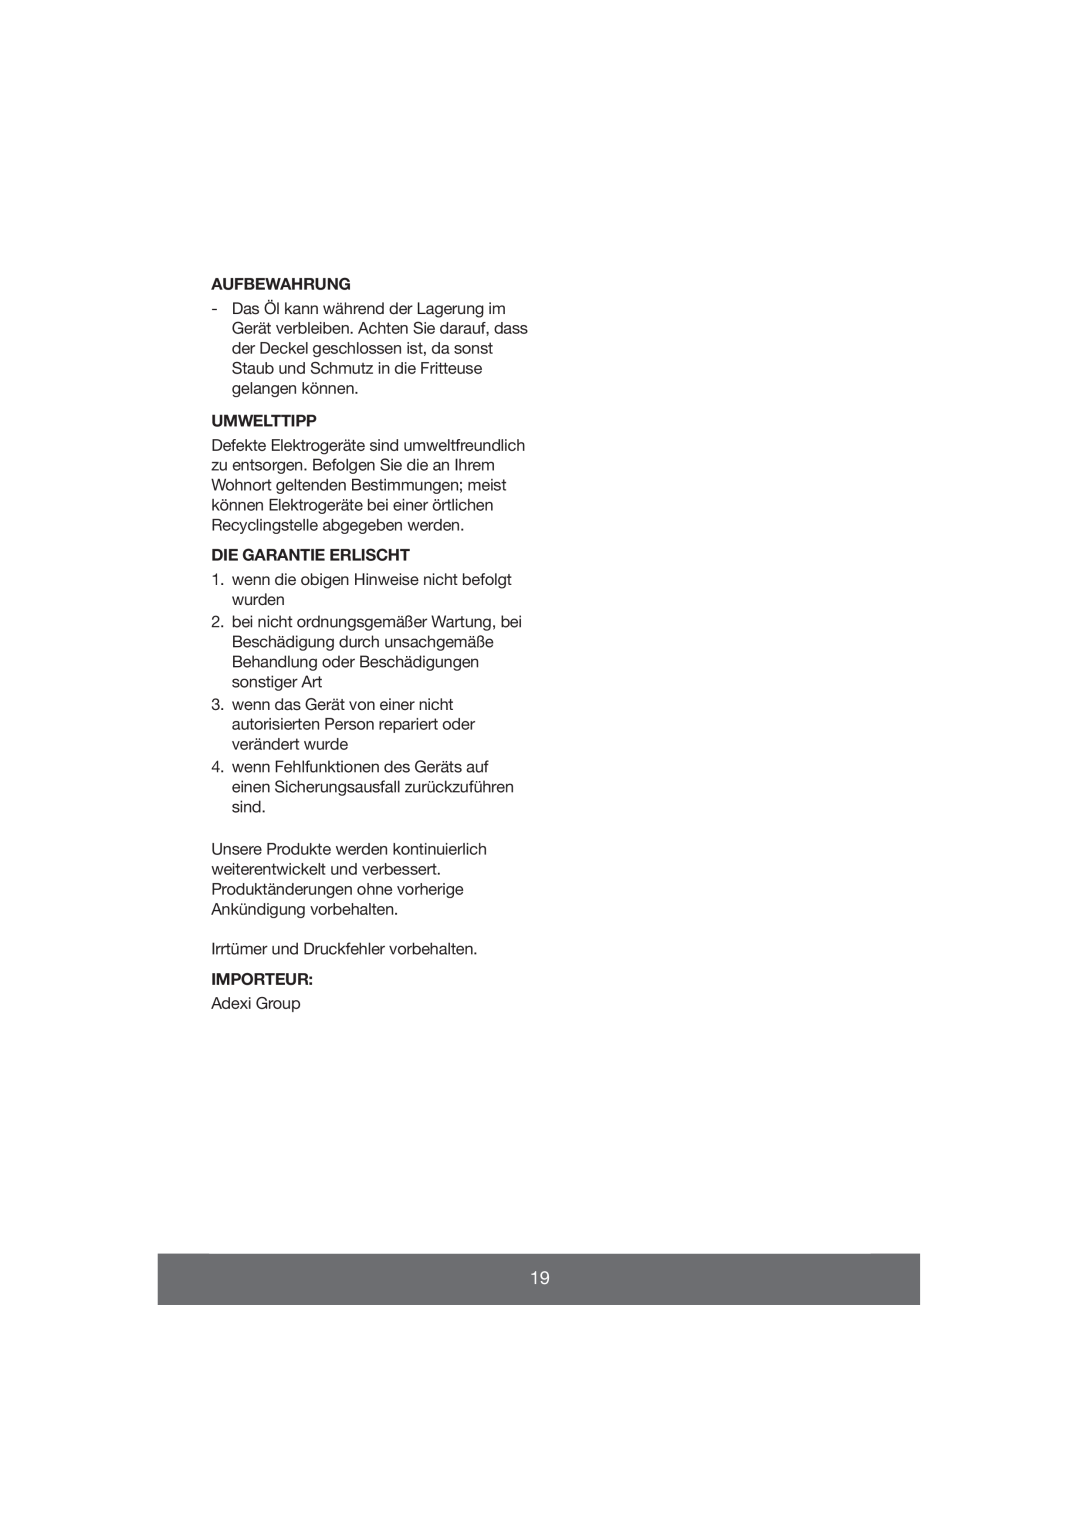 Melissa 643-037 manual Aufbewahrung, Umwelttipp, Die Garantie Erlischt, Importeur 